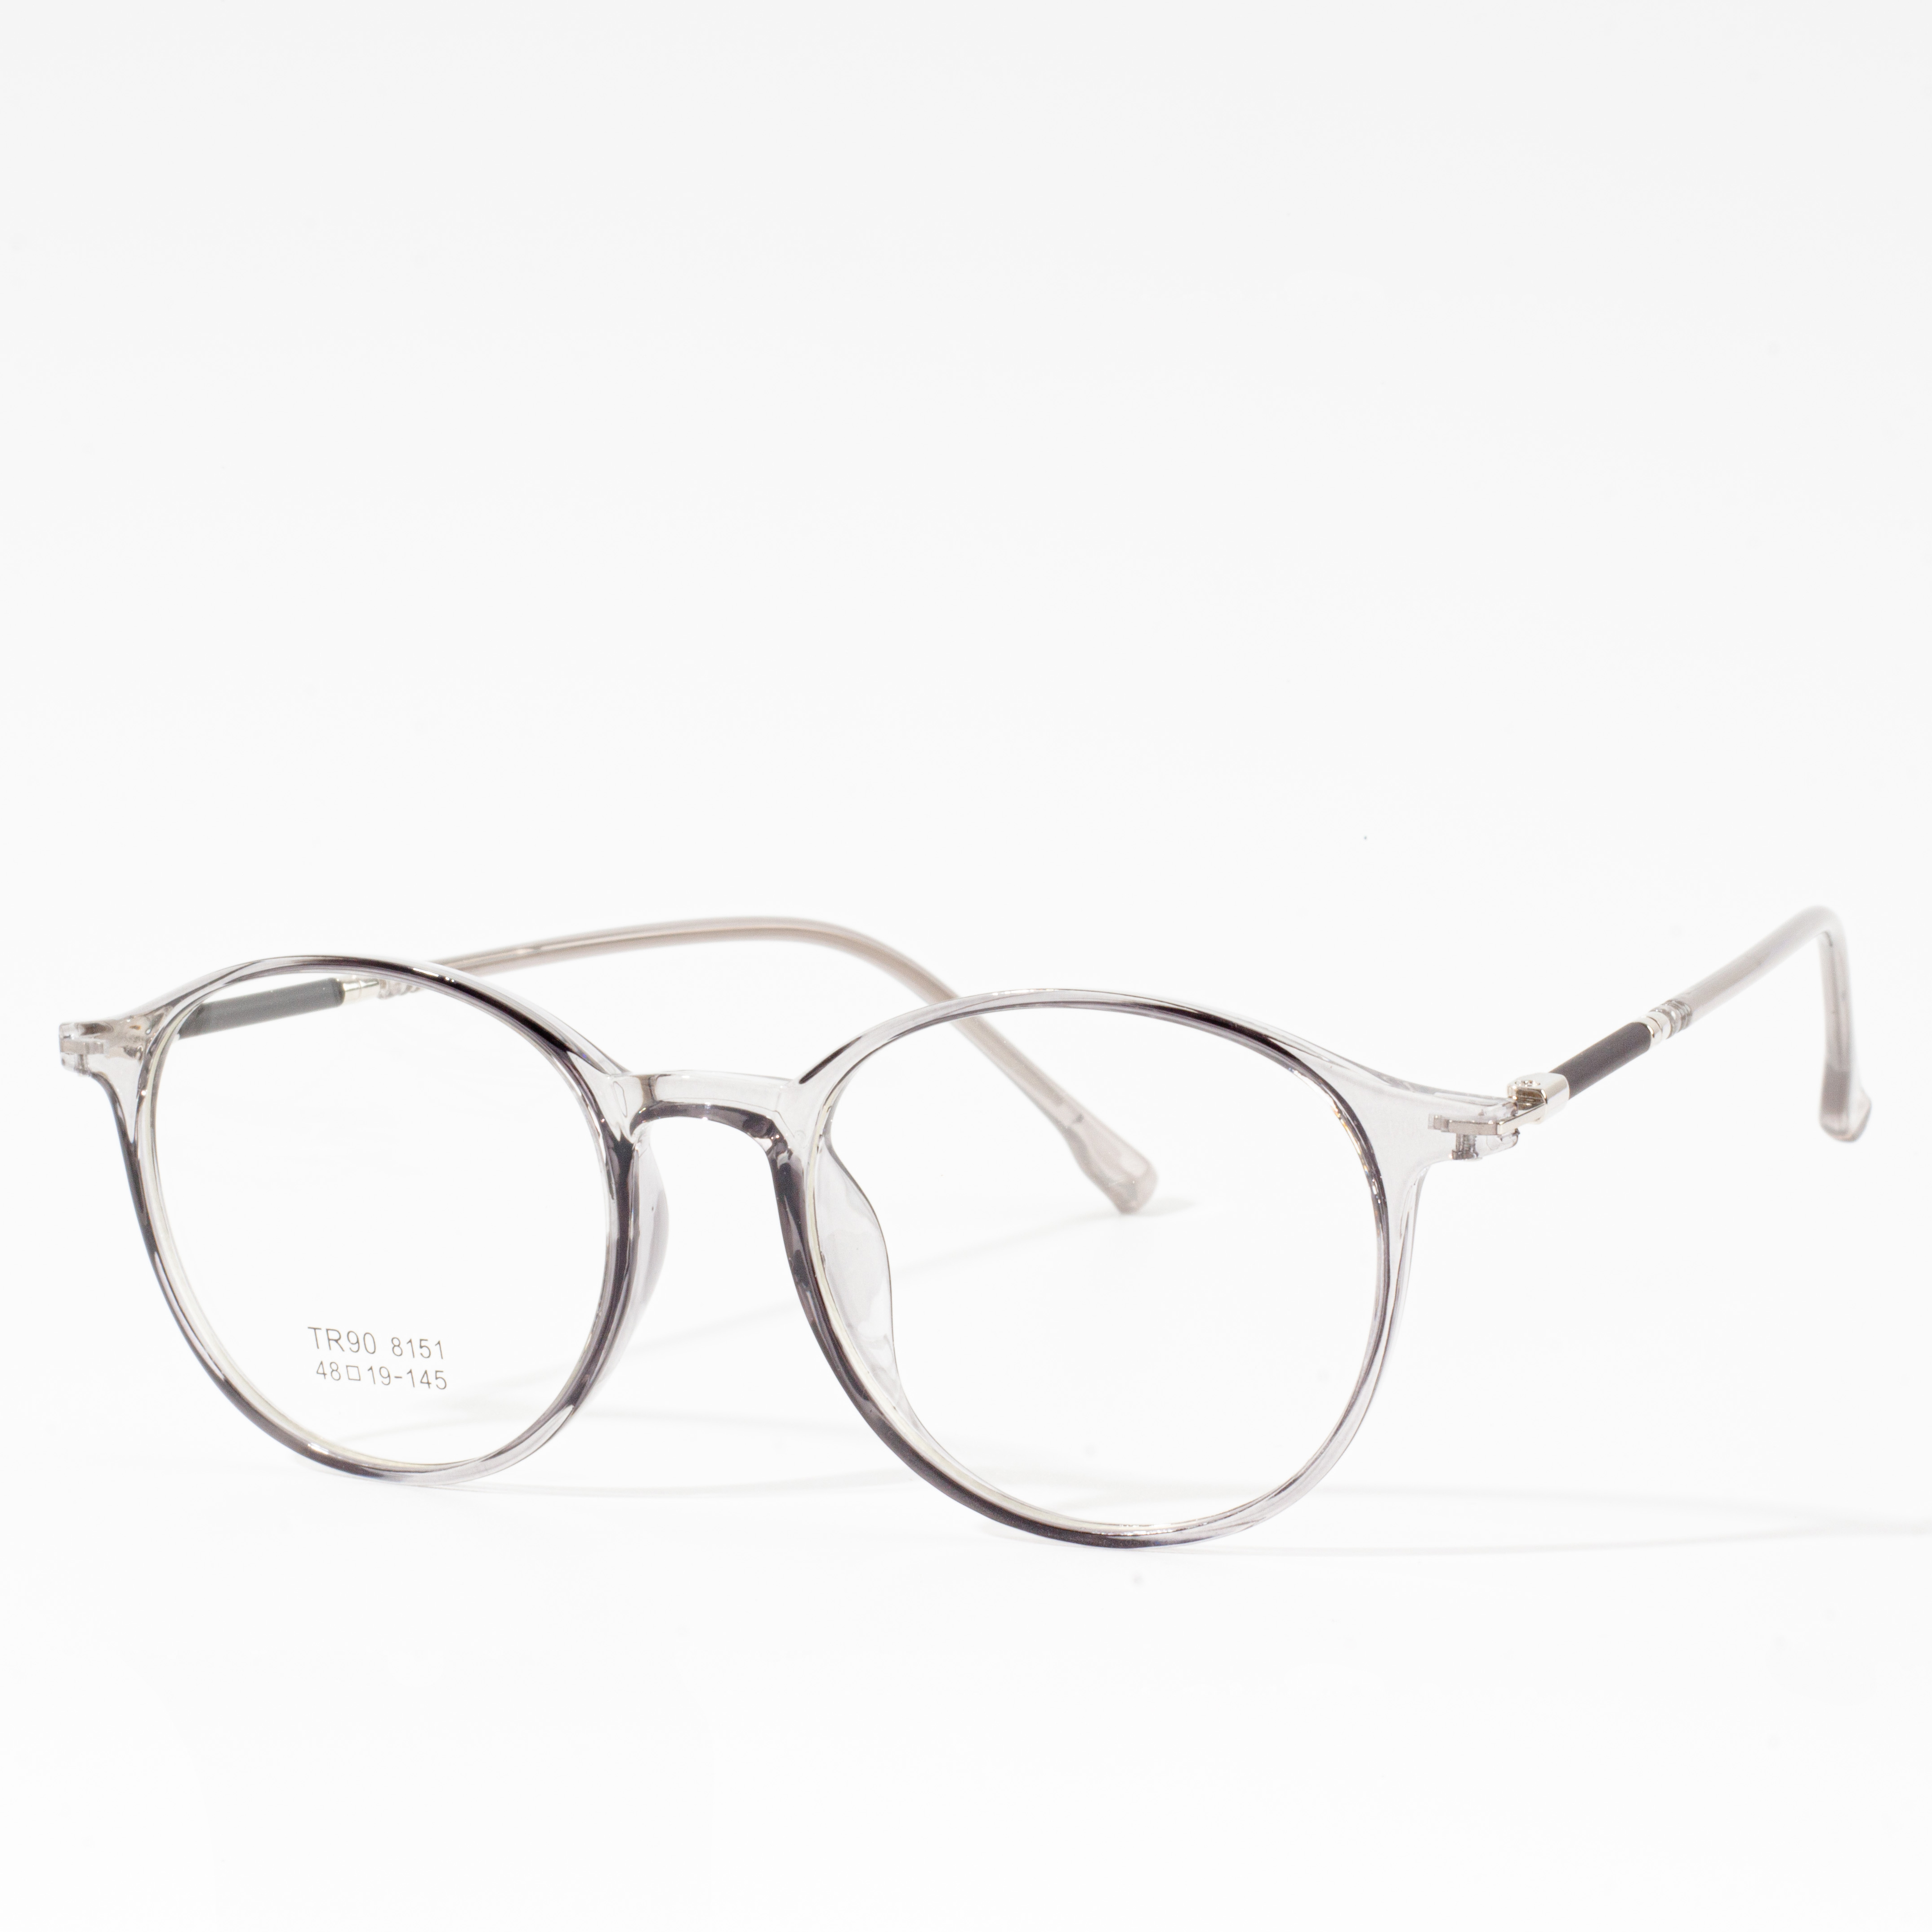 පිරිමි සහ කාන්තා නිර්මාණ රාමු - Eyeglasses.com 广告· https://www.eyeglasses.com/ (888) 896-3885 ඉහළම ගෝලීය Eyeglass සන්නාමවලින් අද සිල්ලර මිලෙන් අඩක් සඳහා සාප්පු නිර්මාණකරණ රාමු.